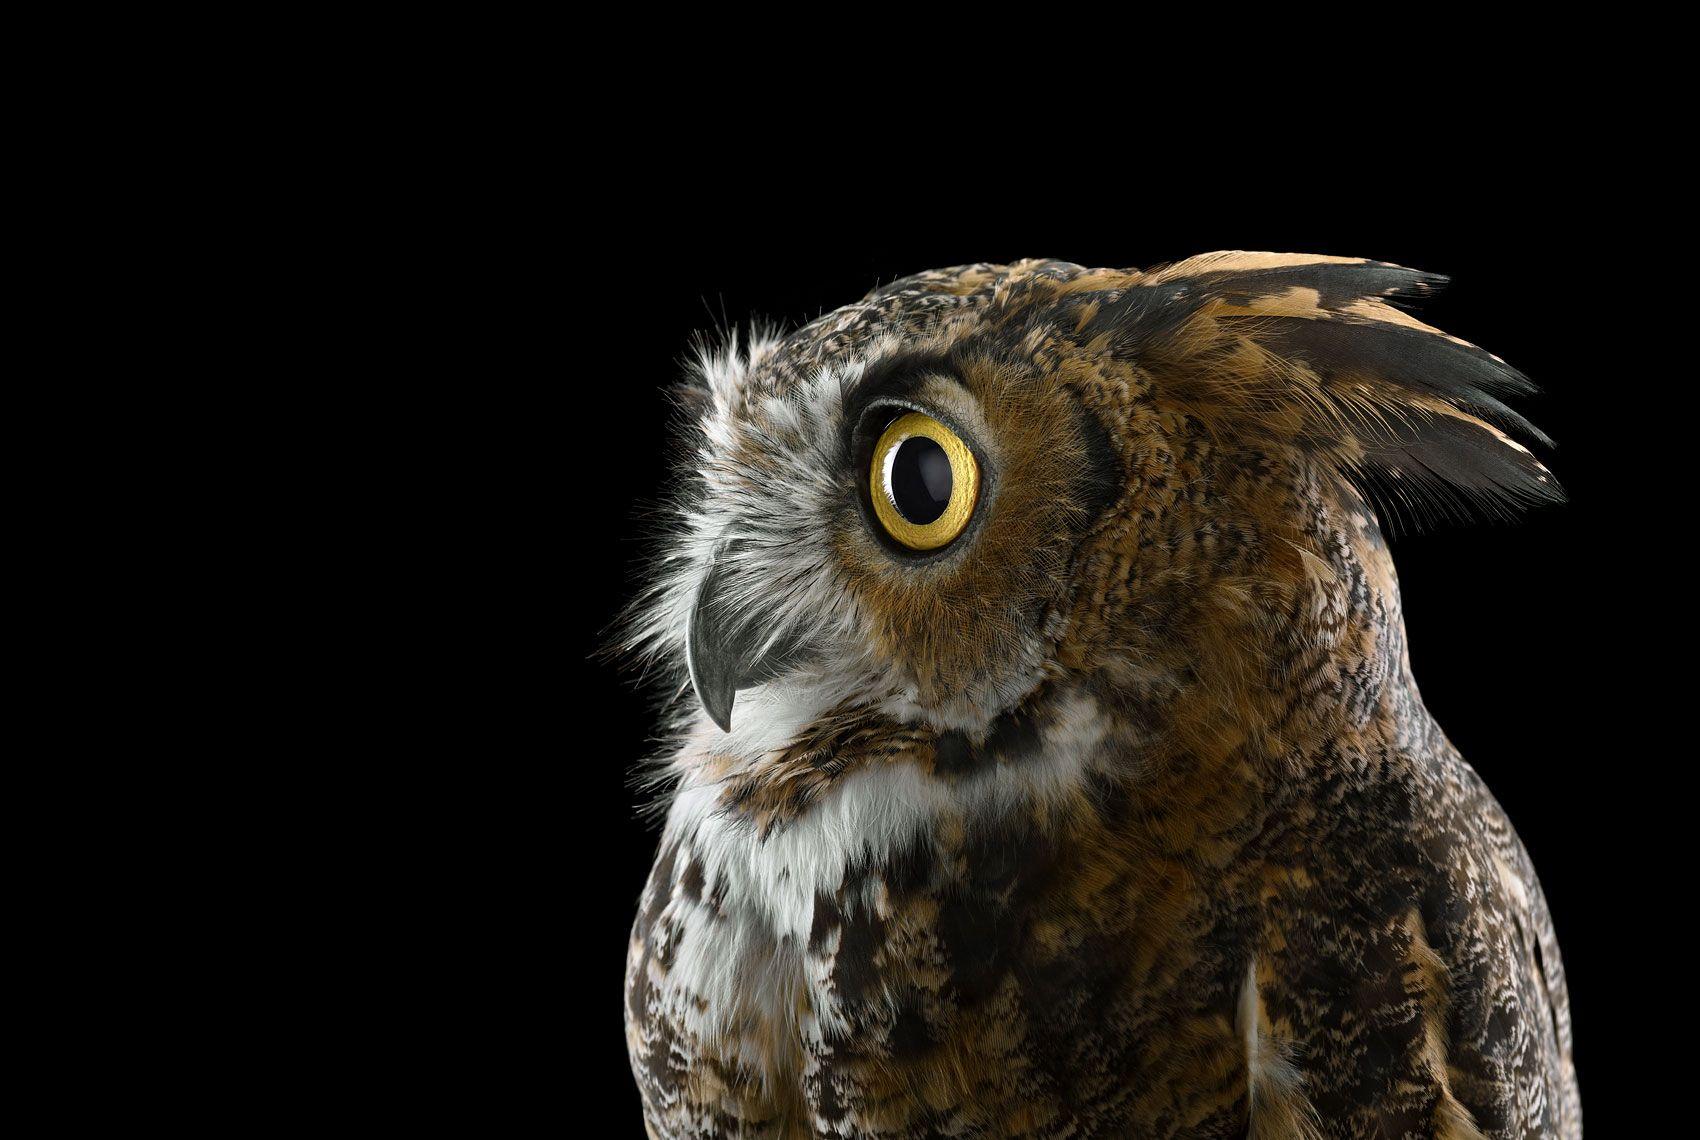 Great Horned Owl #1, Espanola, NM, 2011" ist eine limitierte Auflage eines Fotos des zeitgenössischen Künstlers Brad Wilson aus der Serie "Affinity", die Studio-Porträts von Wildtieren zeigt. 

Dieses Foto wird nur als ungerahmter Abzug verkauft. Es